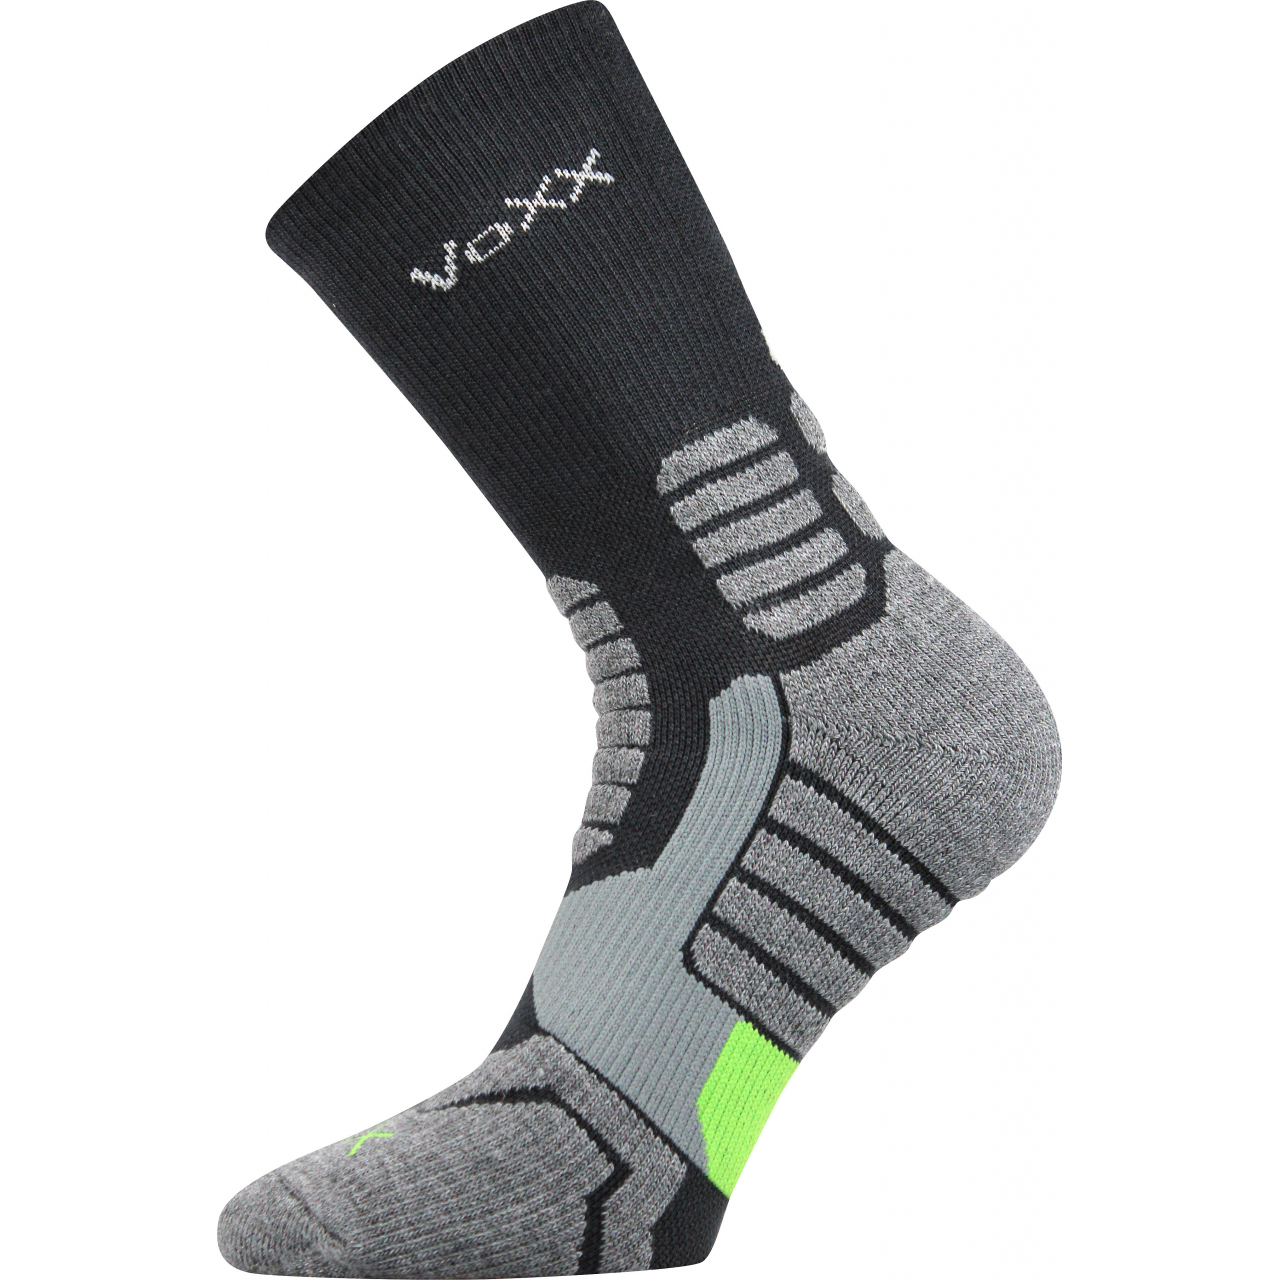 Ponožky kompresní unisex Voxx Ronin - tmavě šedé-černé, 43-46